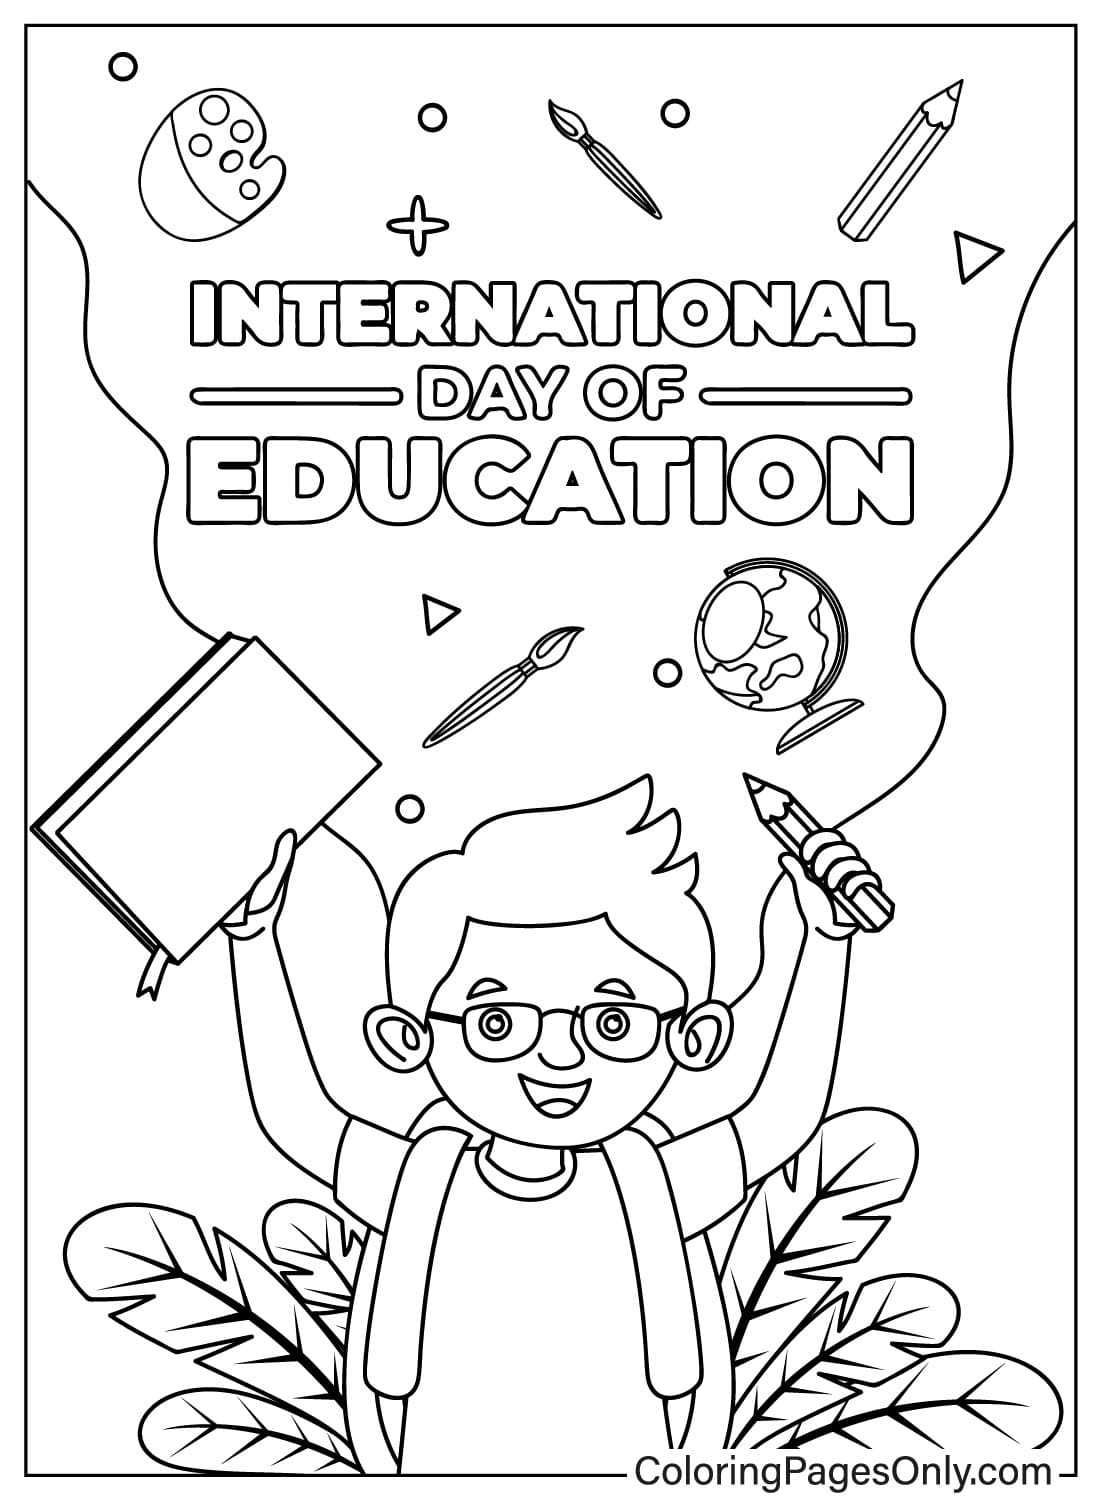 Página para colorear del Día Internacional de la Educación gratuita del Día Internacional de la Educación